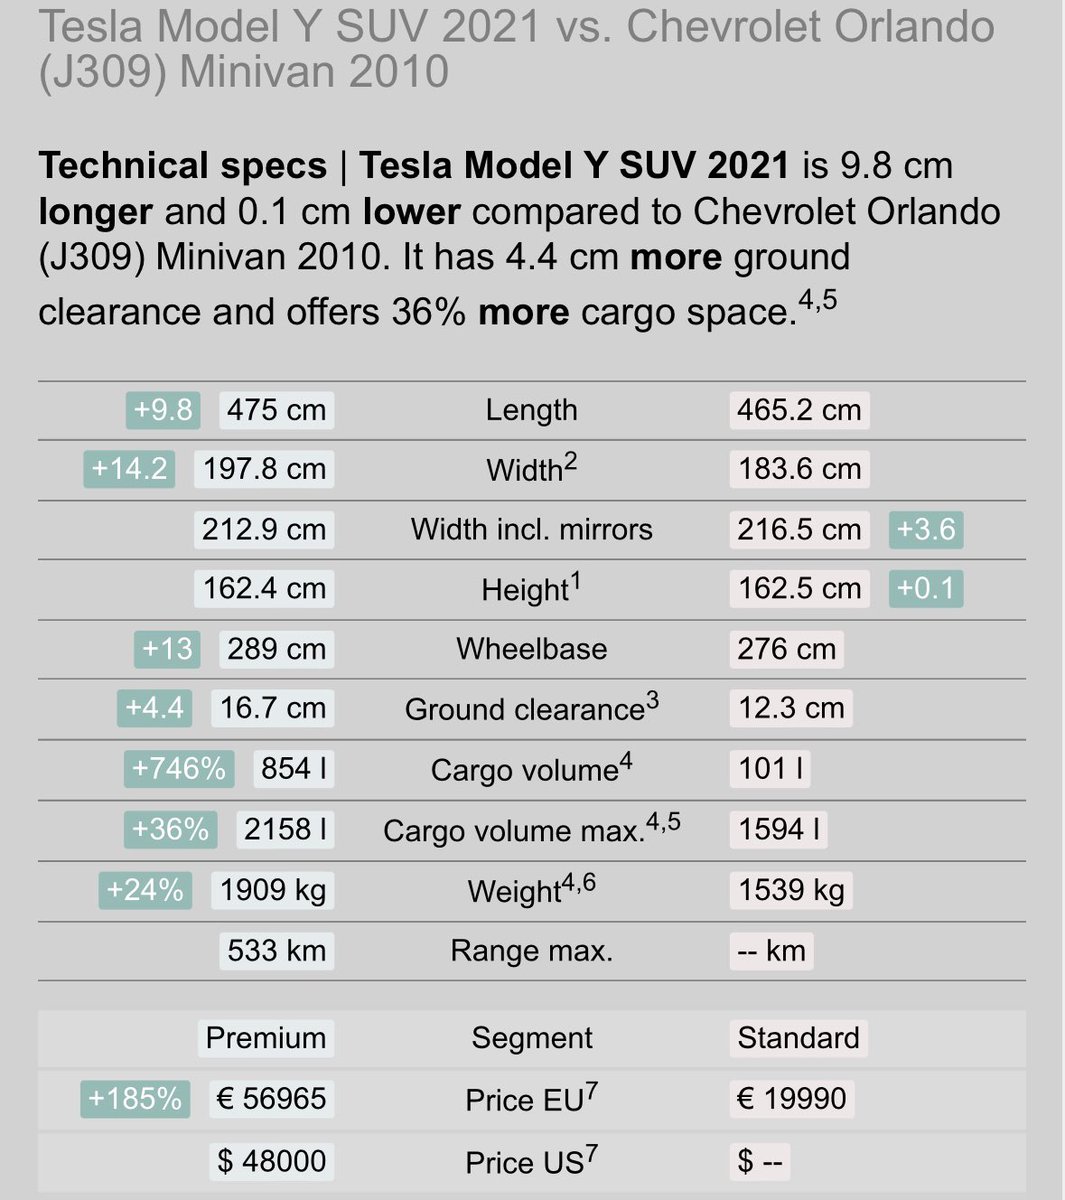 궁금한 것 해결해주세요😭

올란도는 MPV, 모델Y는 SUV인 이유가 뭐죠..?
MPV와 SUV를 나누는 기준이 뭘까요?

참고로 올란도와 모델Y를 비교해보면 

모델Y가 
길이는 약 10cm길고
폭은 14cm가 넓고
높이는 오히려 0.1cm낮은데.. 가장 뒷쪽의 높이은 올란도가 월등히? 높습니다.